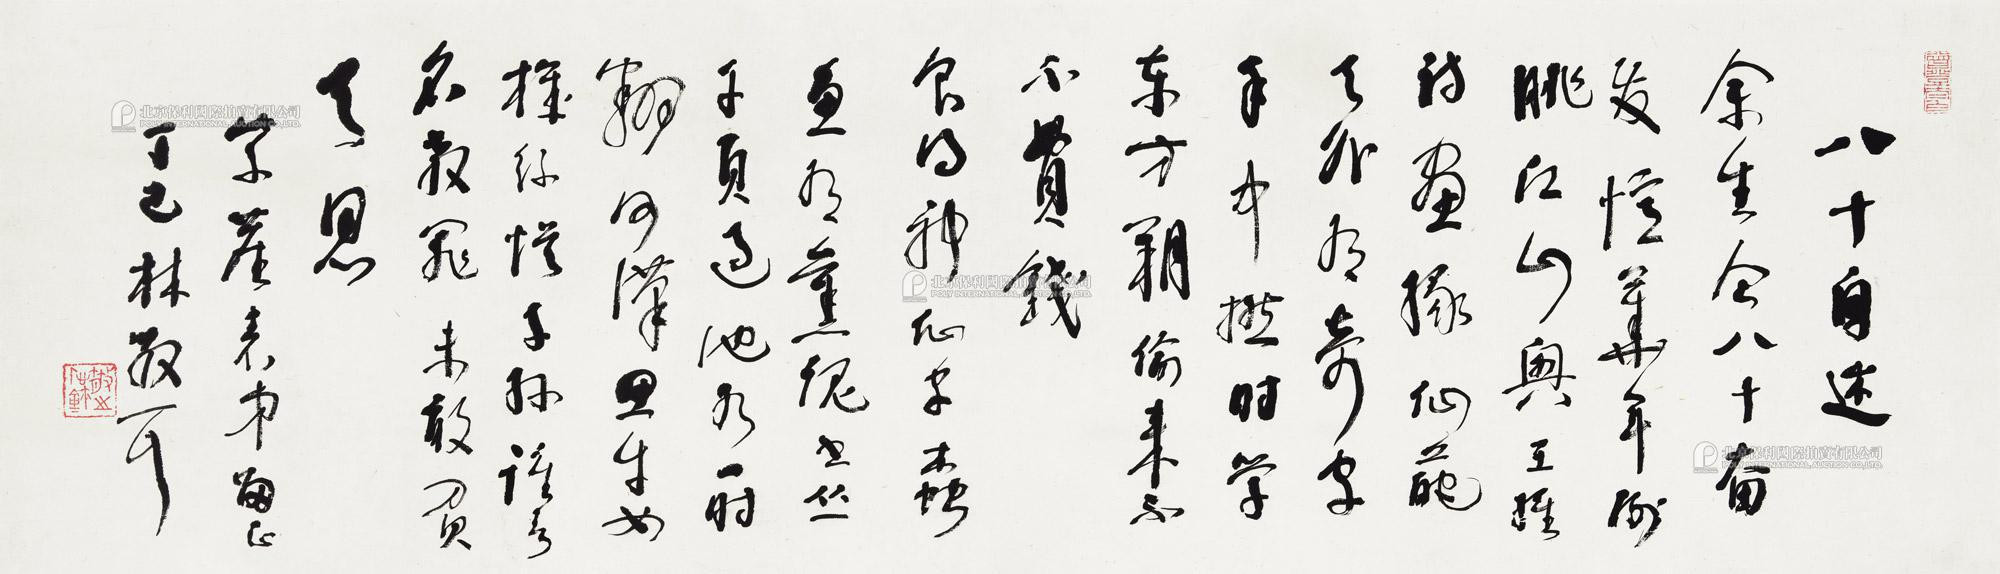 Calligraphic Poem  in  Curise Script